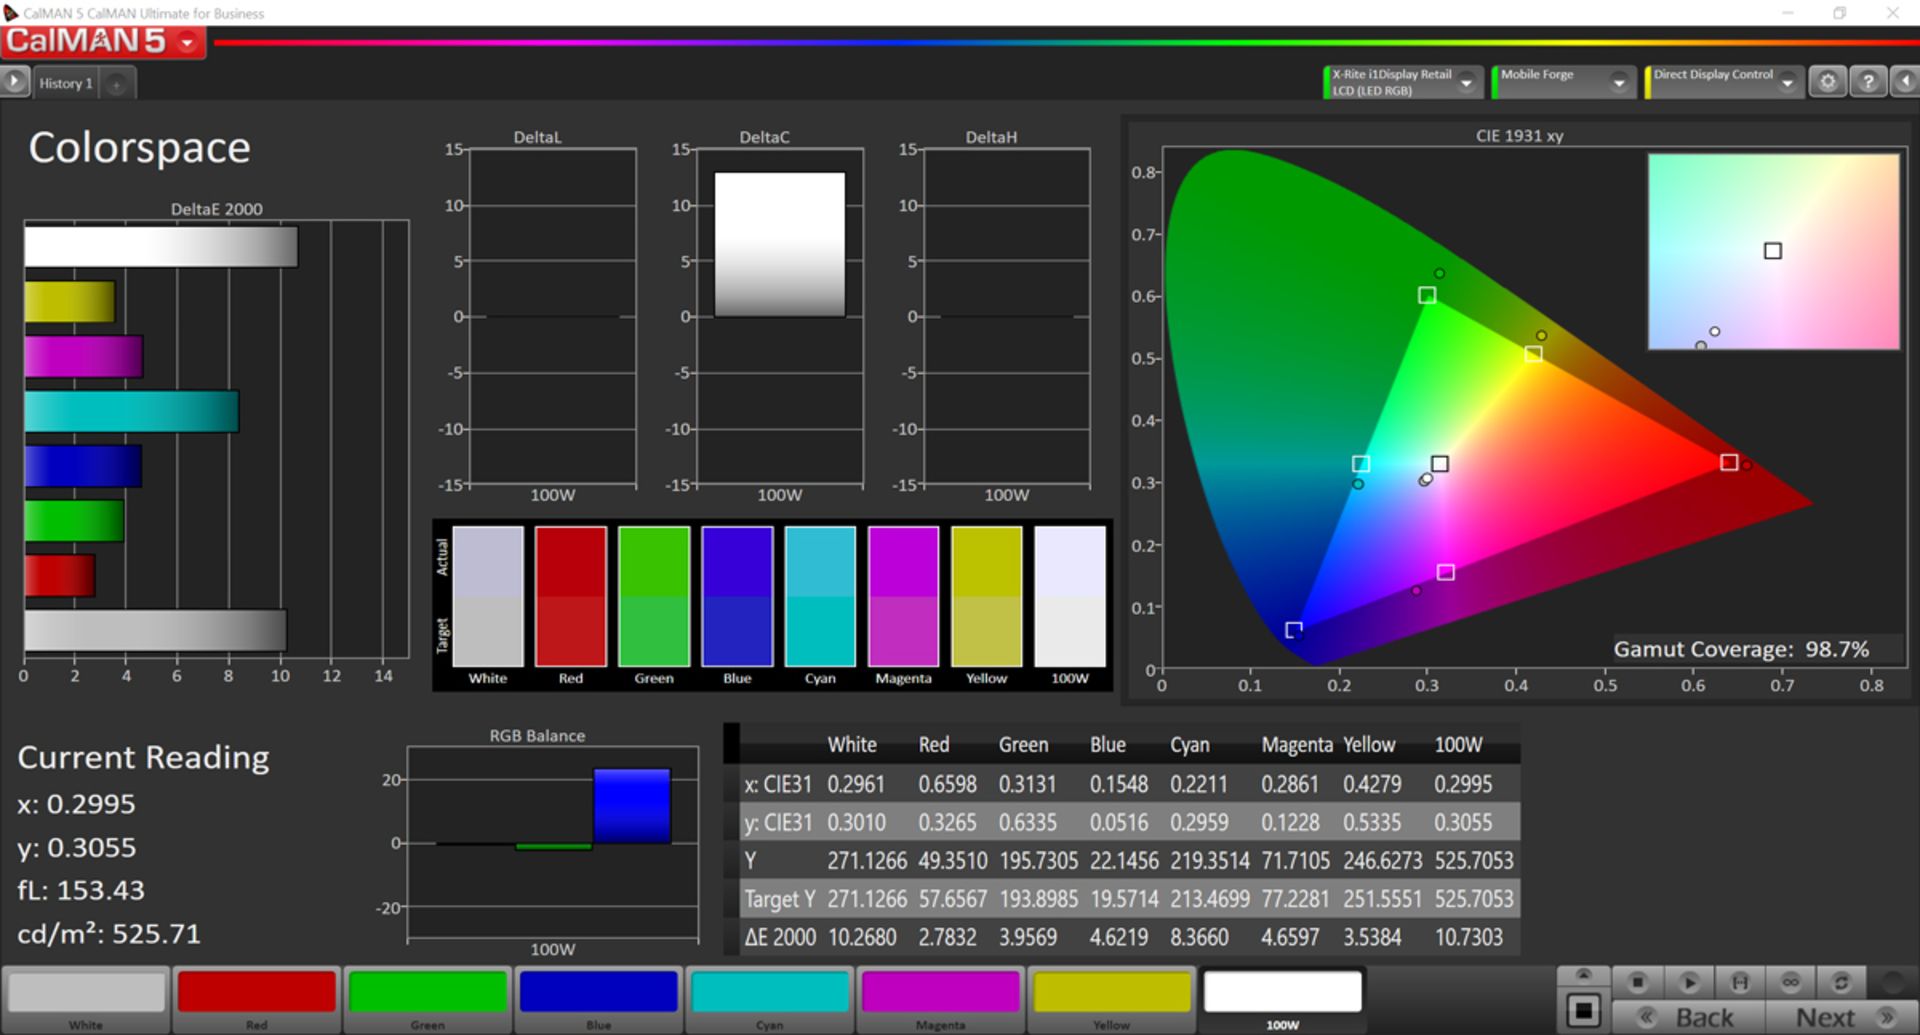 مرجع متخصصين ايران پوشش رنگي در فضاي رنگي sRGB و حالت Increased Contrast براي ردمي نوت ۷